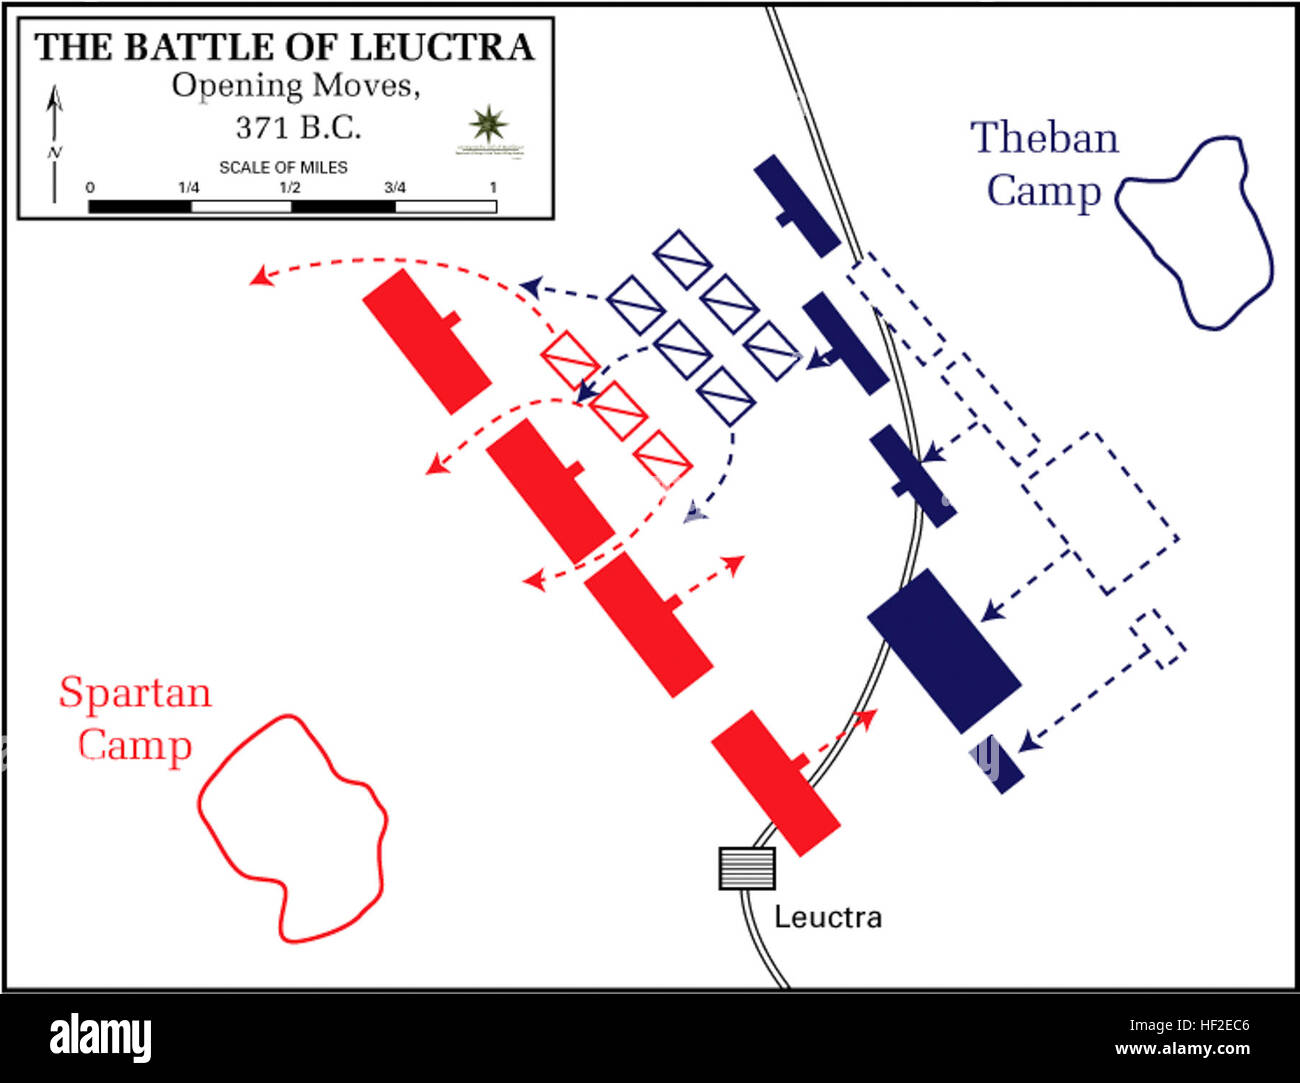 Battaglia di Leuctra, 371 BC - apertura si sposta Foto Stock